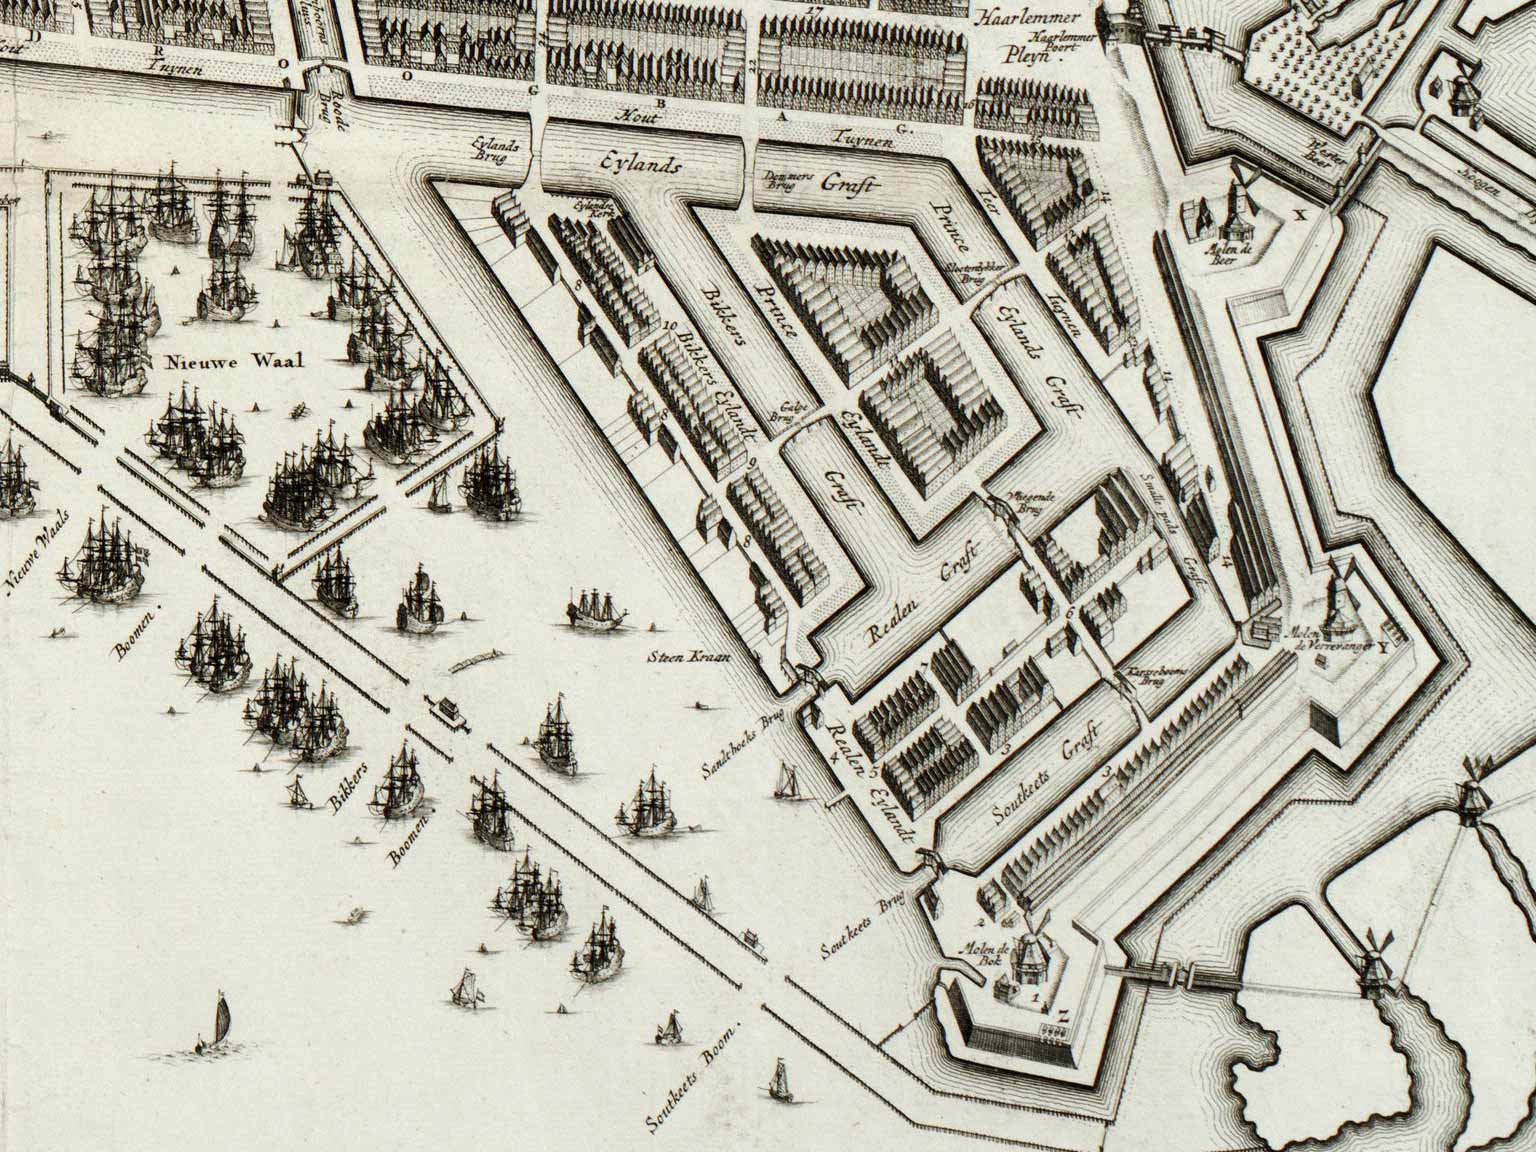 Westelijke Eilanden, Amsterdam, with the original bridges, map by Gerrit de Broen from 1737